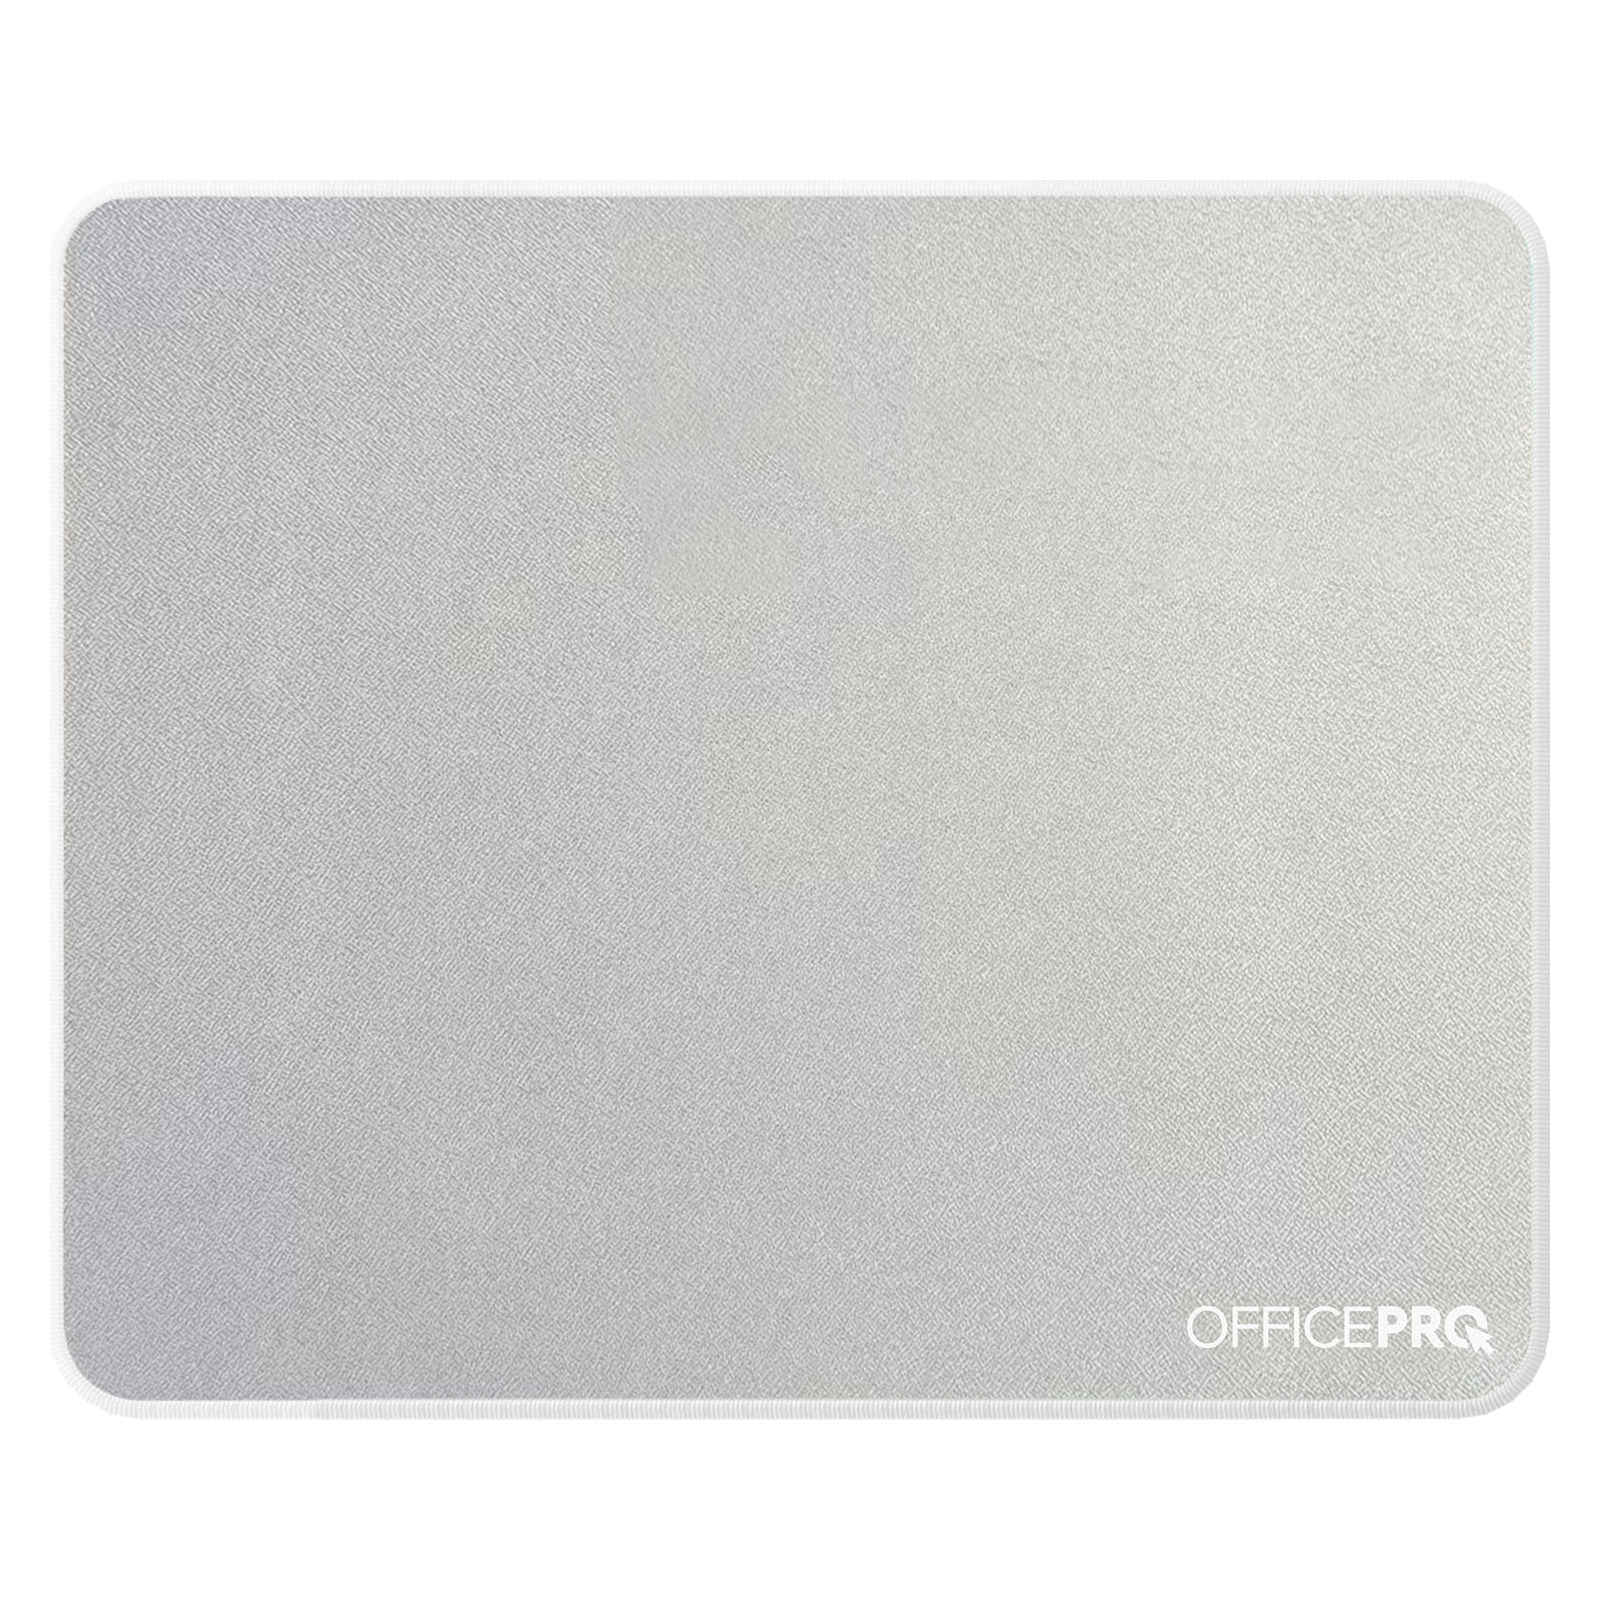 Коврик для мышки OfficePro MP102LG Liht Gray (MP102LG)